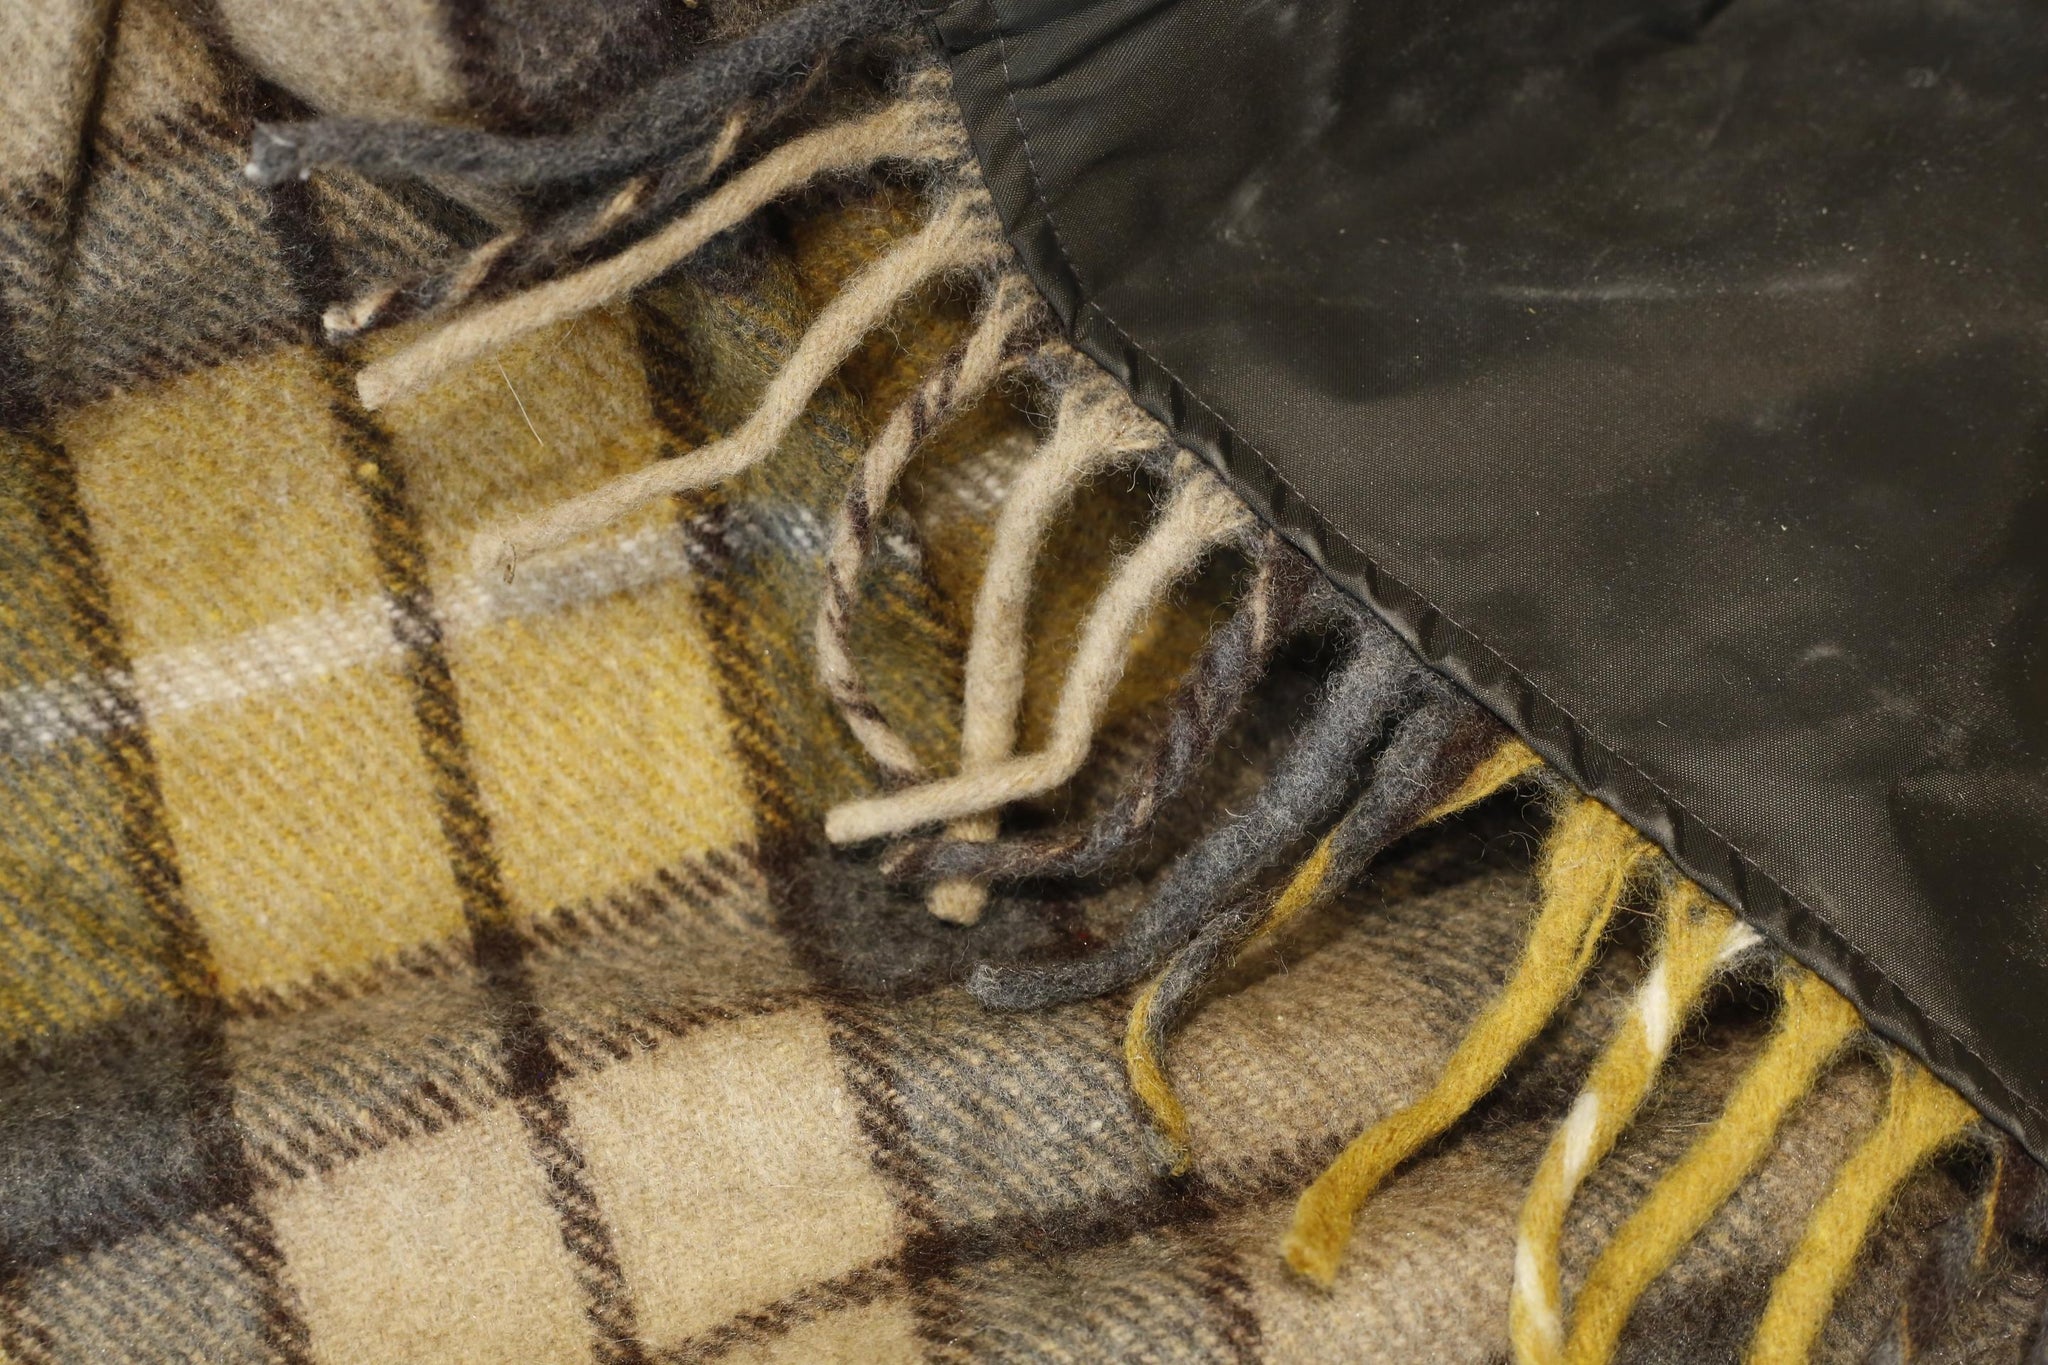 Recycled Wool Waterproof Picnic Blanket in Buchanan Natural Tartan